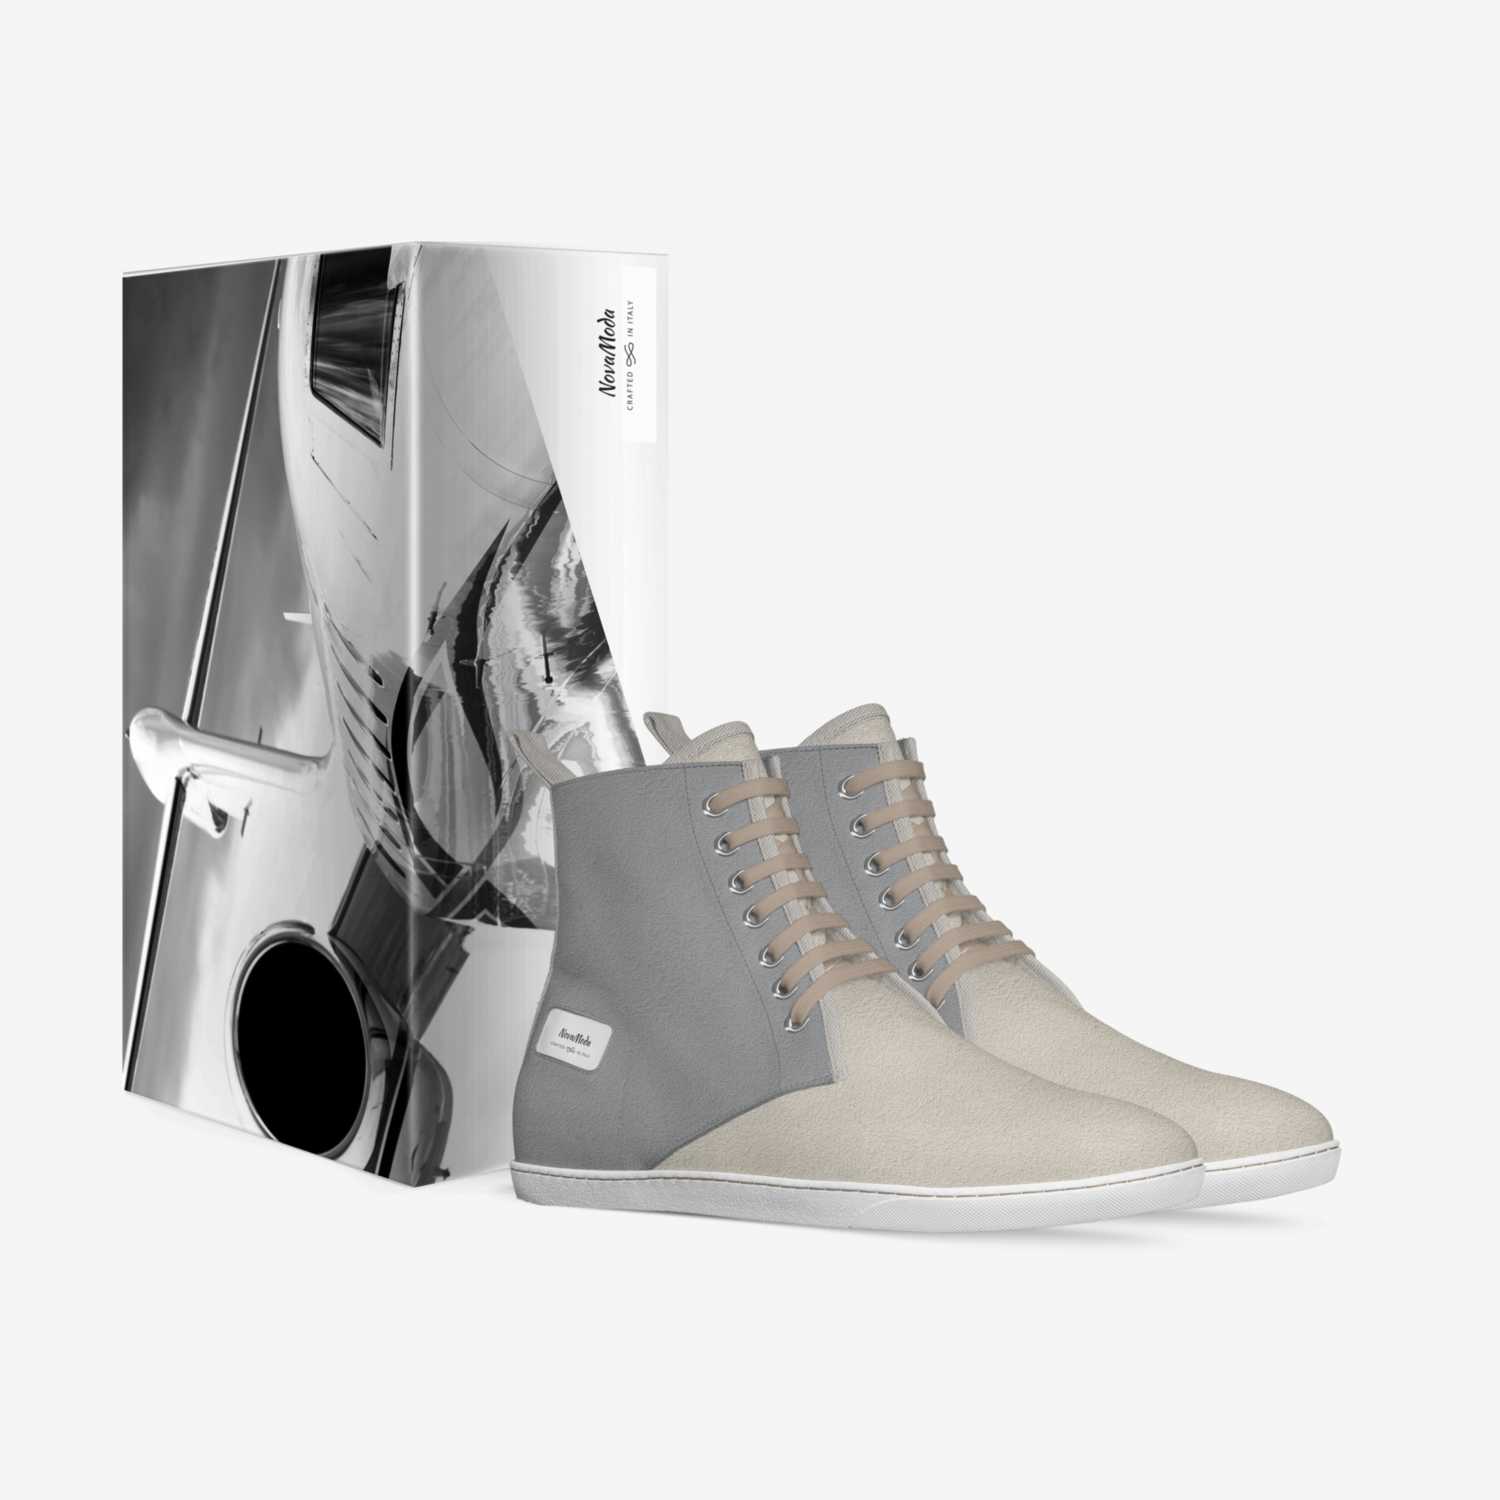 NovaModa custom made in Italy shoes by Adela Beledova | Box view